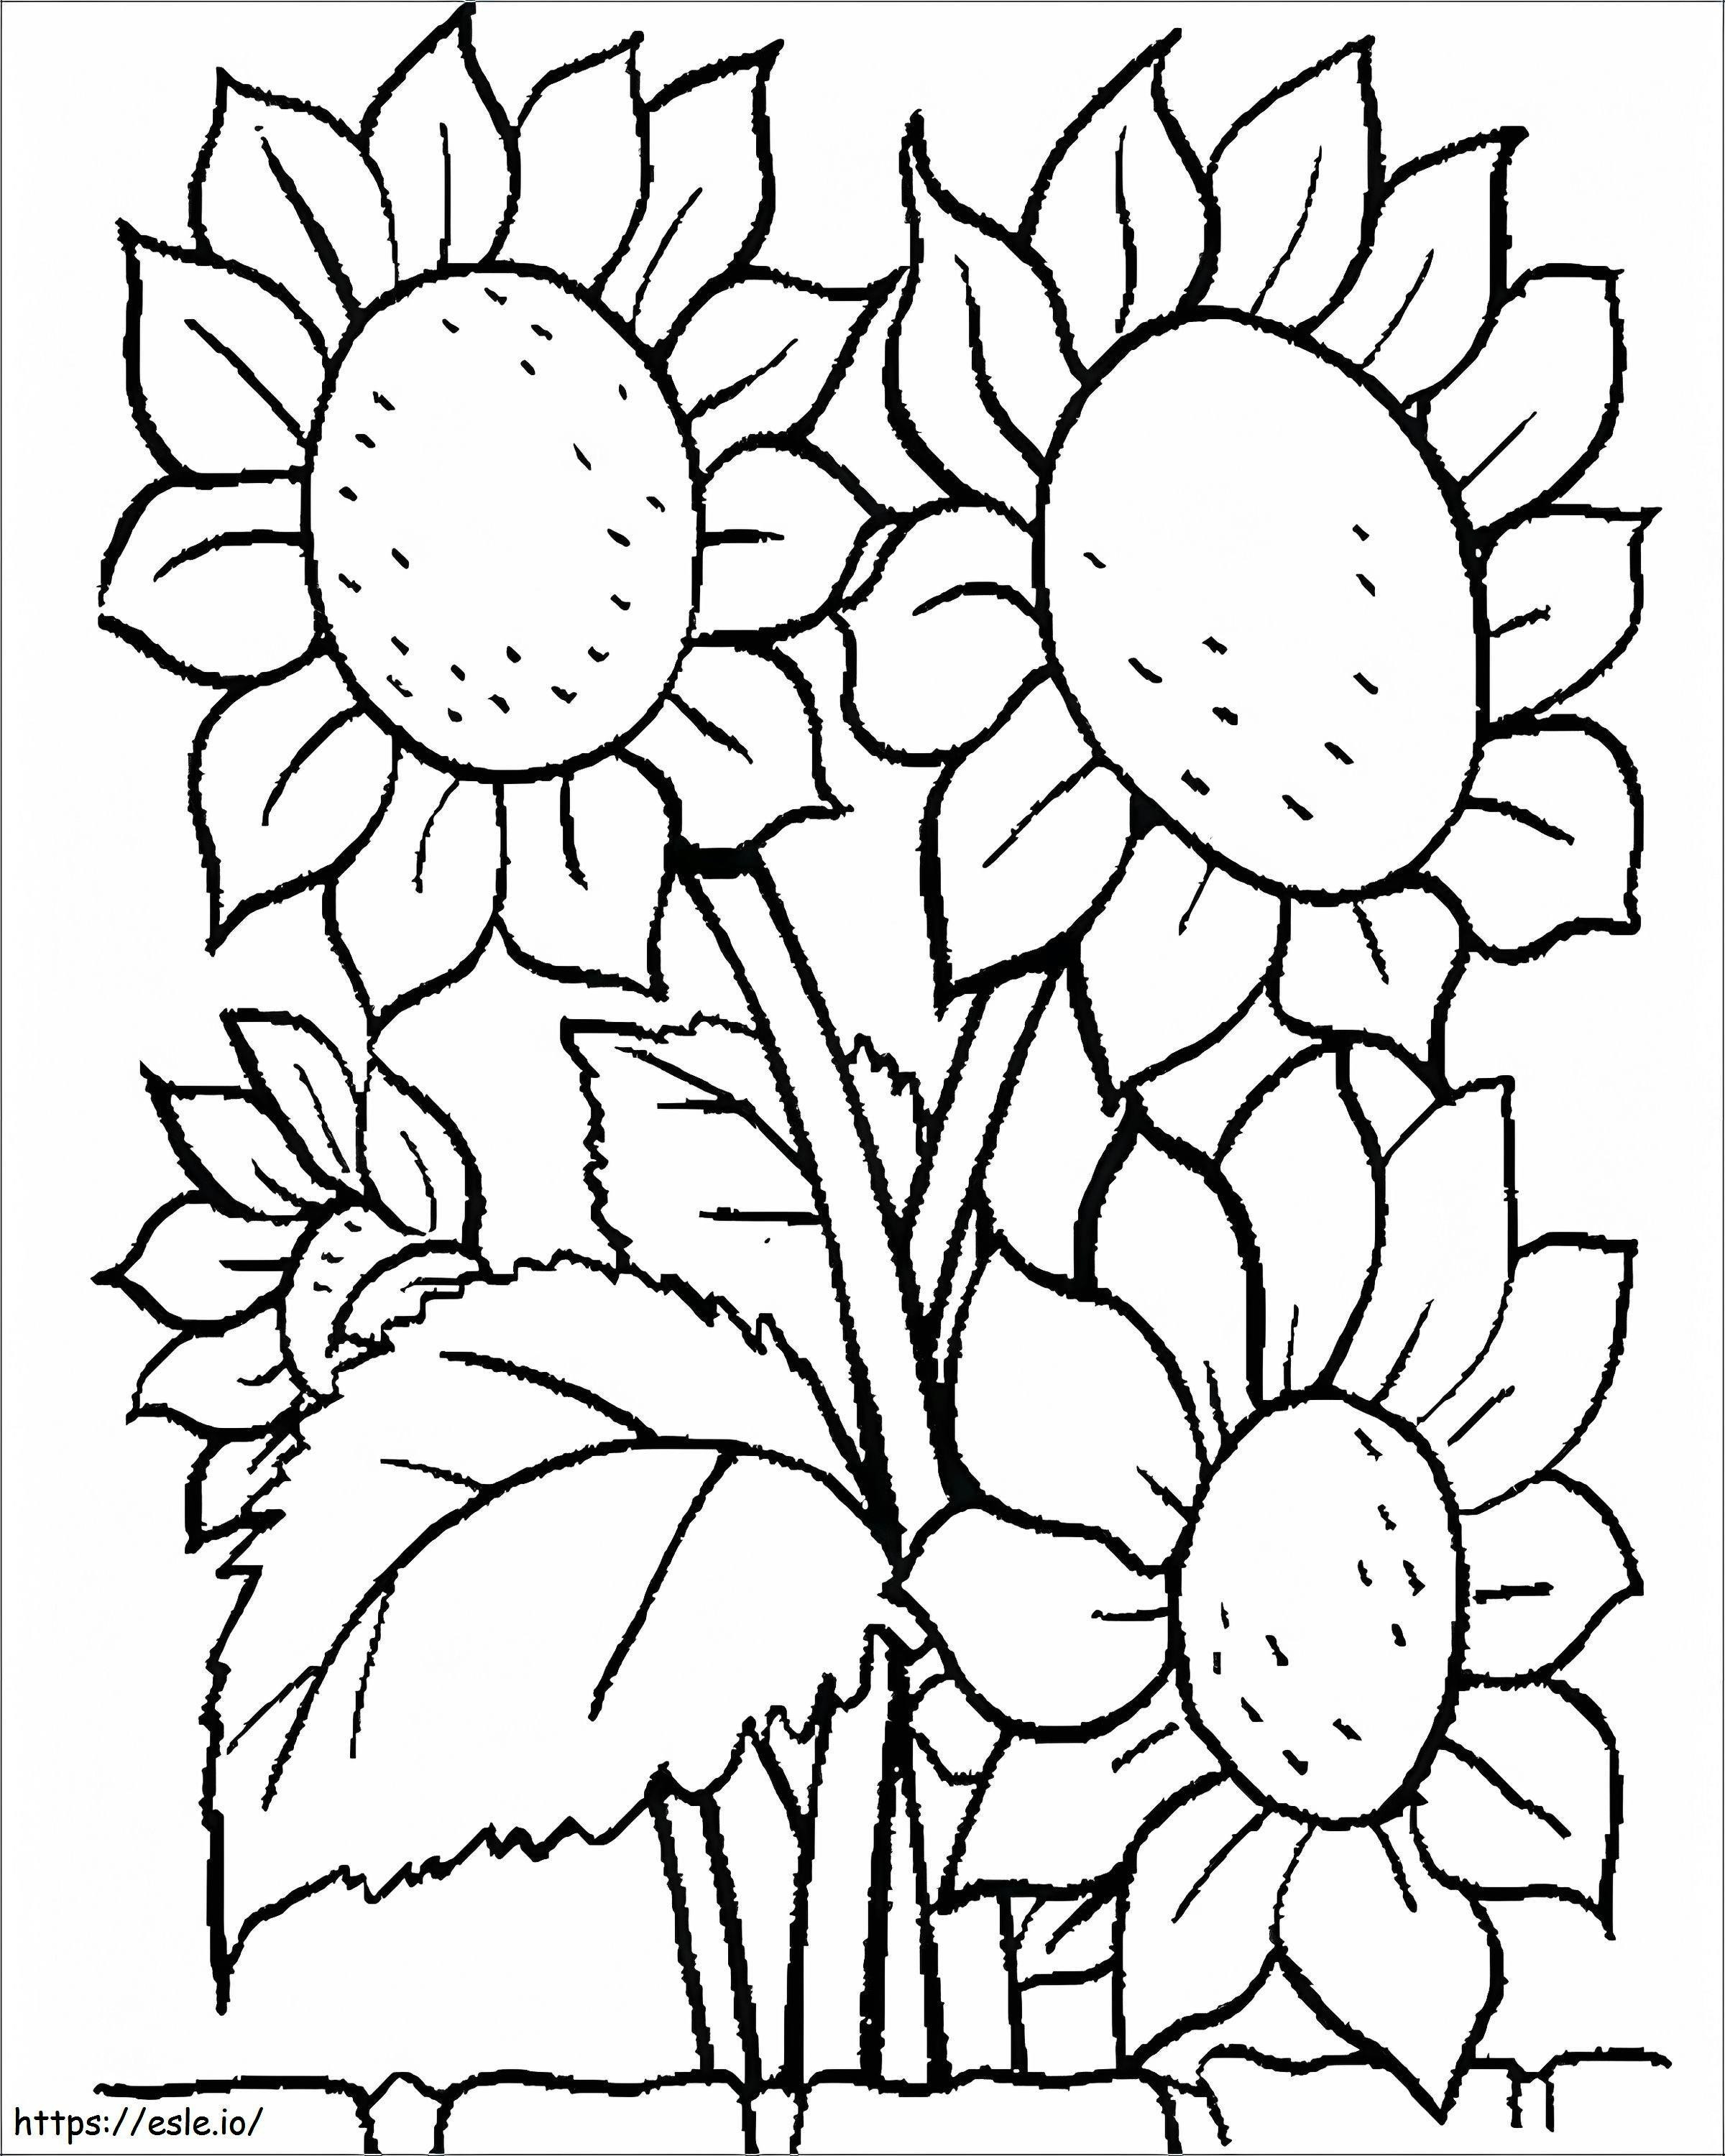 1539919156 Blumen-Malvorlagen für Kinder im Vorschulalter Einfach druckbare Blumen-Kostenlose Blumen-Malbilder Blumen zum Ausdrucken Blumen-Malvorlagen Druckbare Blumen-Malvorlagen für Vorschulkinder ausmalbilder